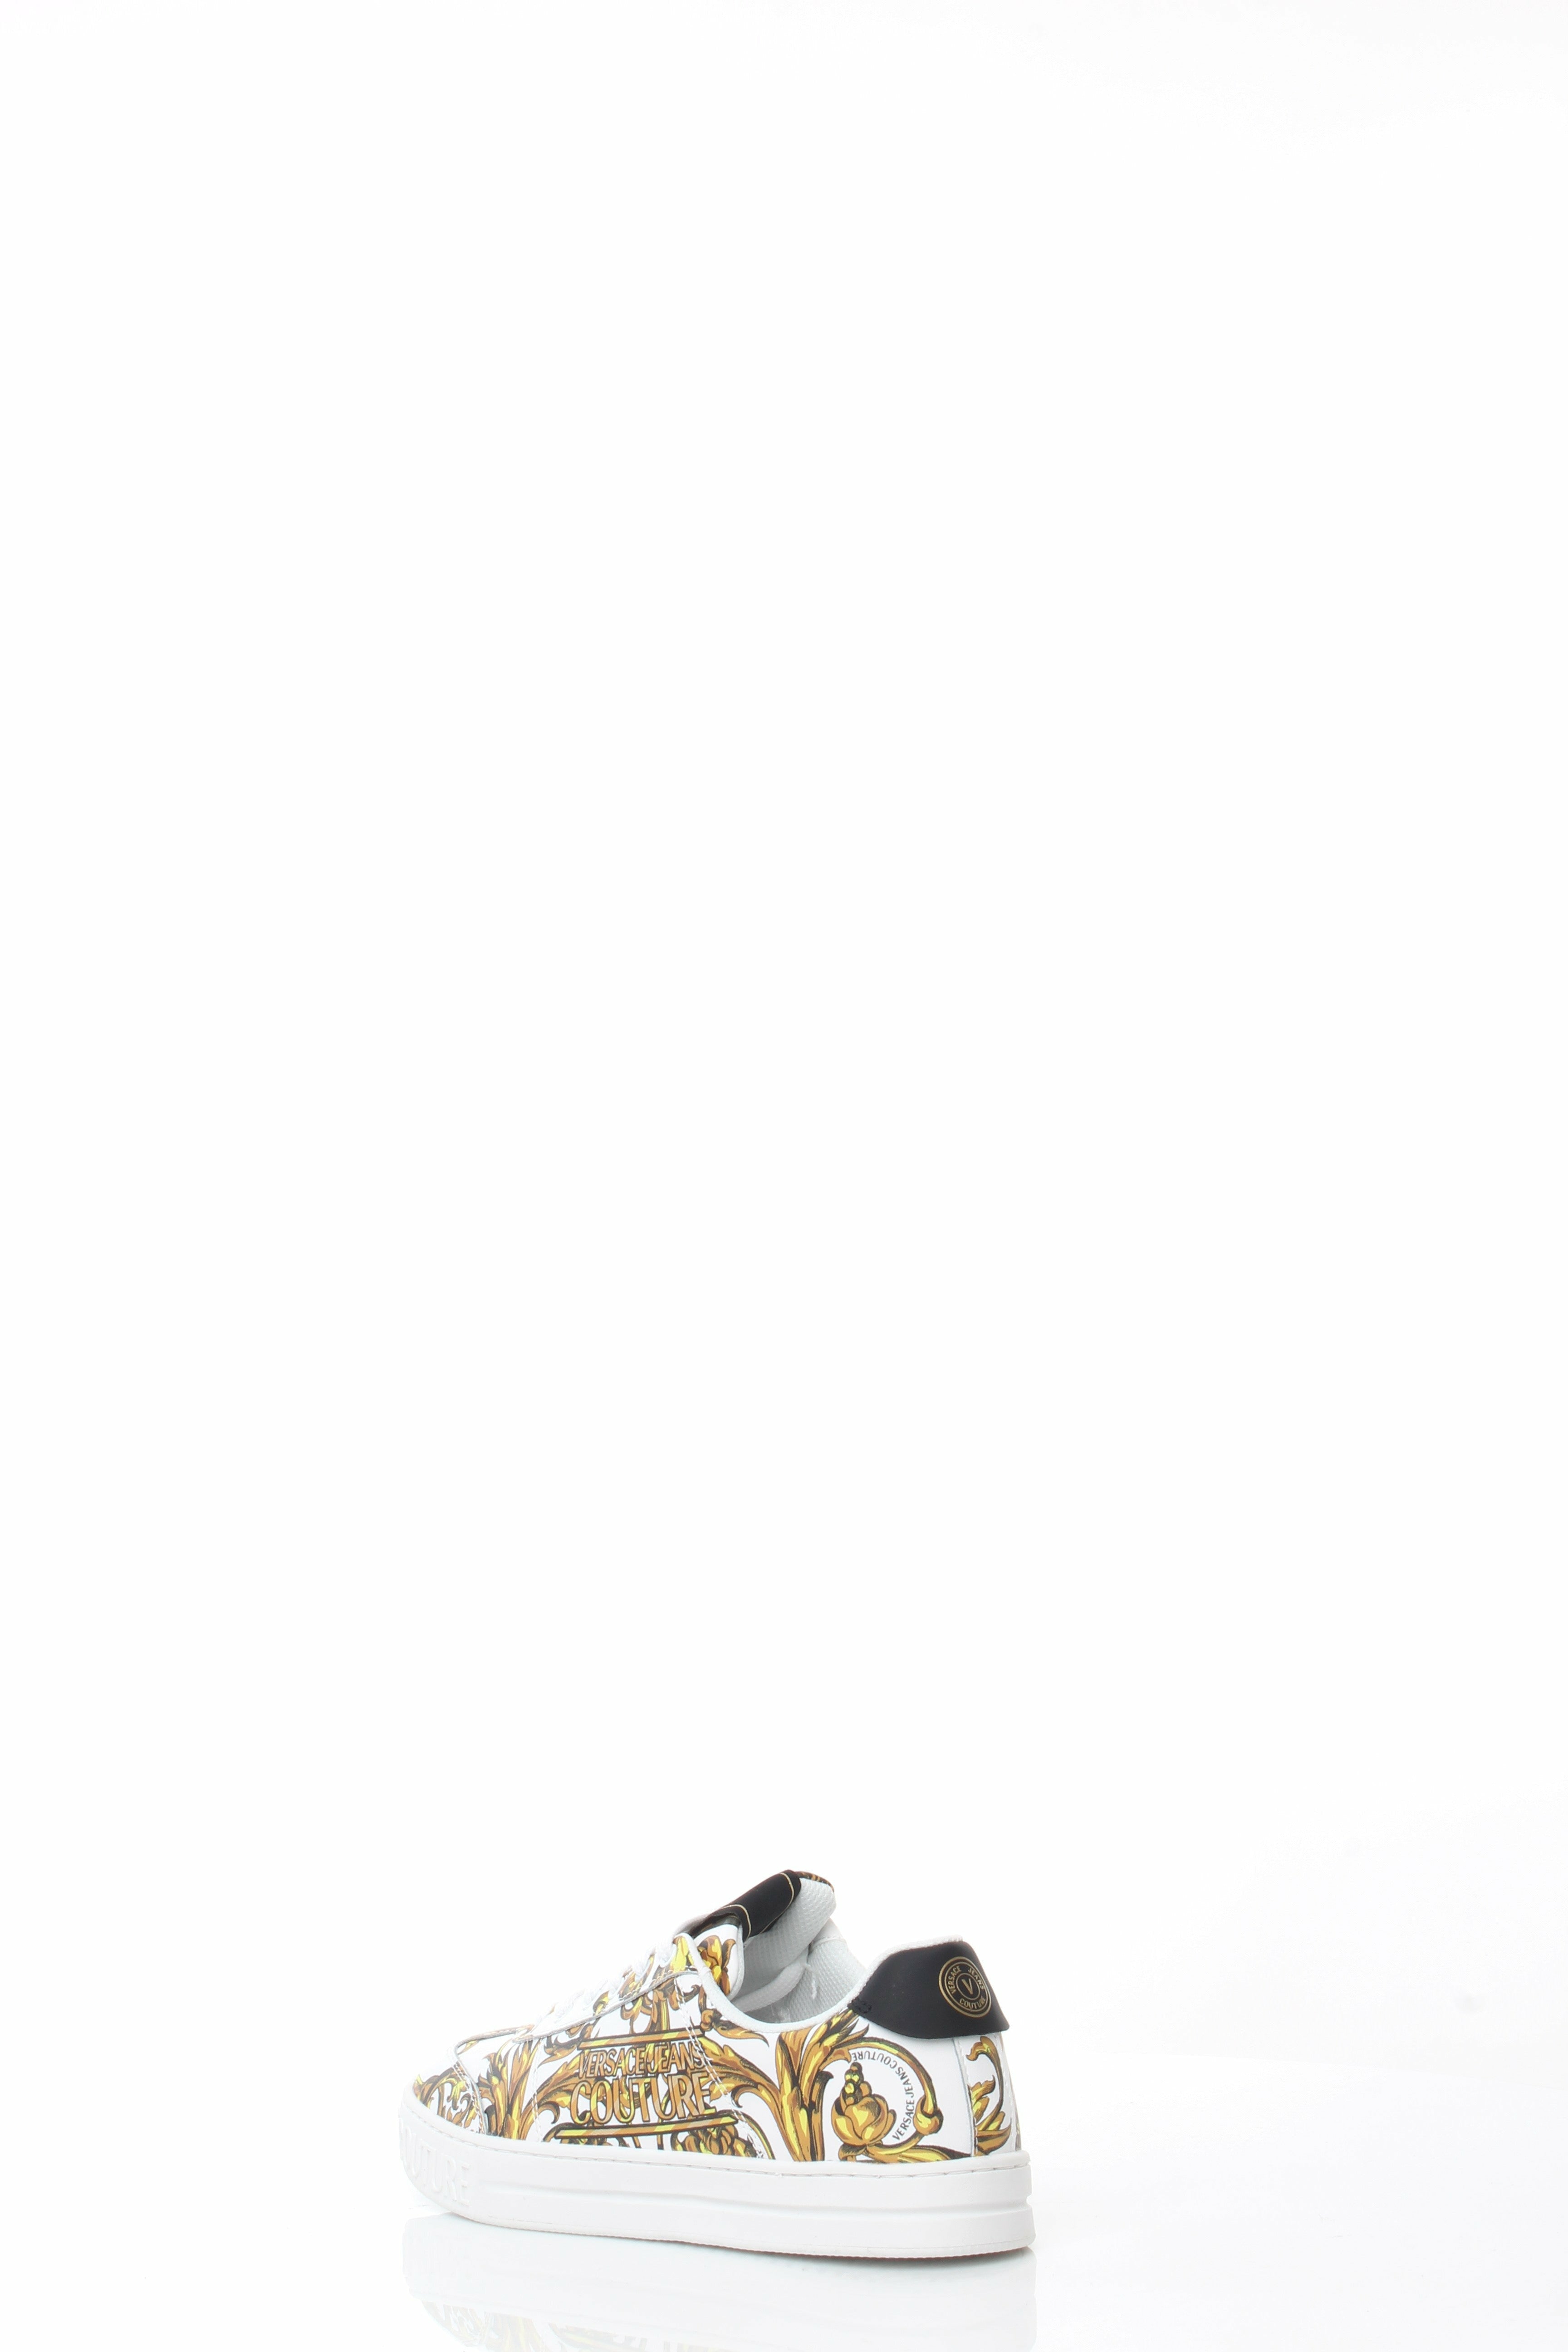 VERSACEJEANSCOUTURE 72YA3SK6-ZP100 sneakers in pelle con stampa barocca all-over, logo sul retro e patch con logo sulla linguetta